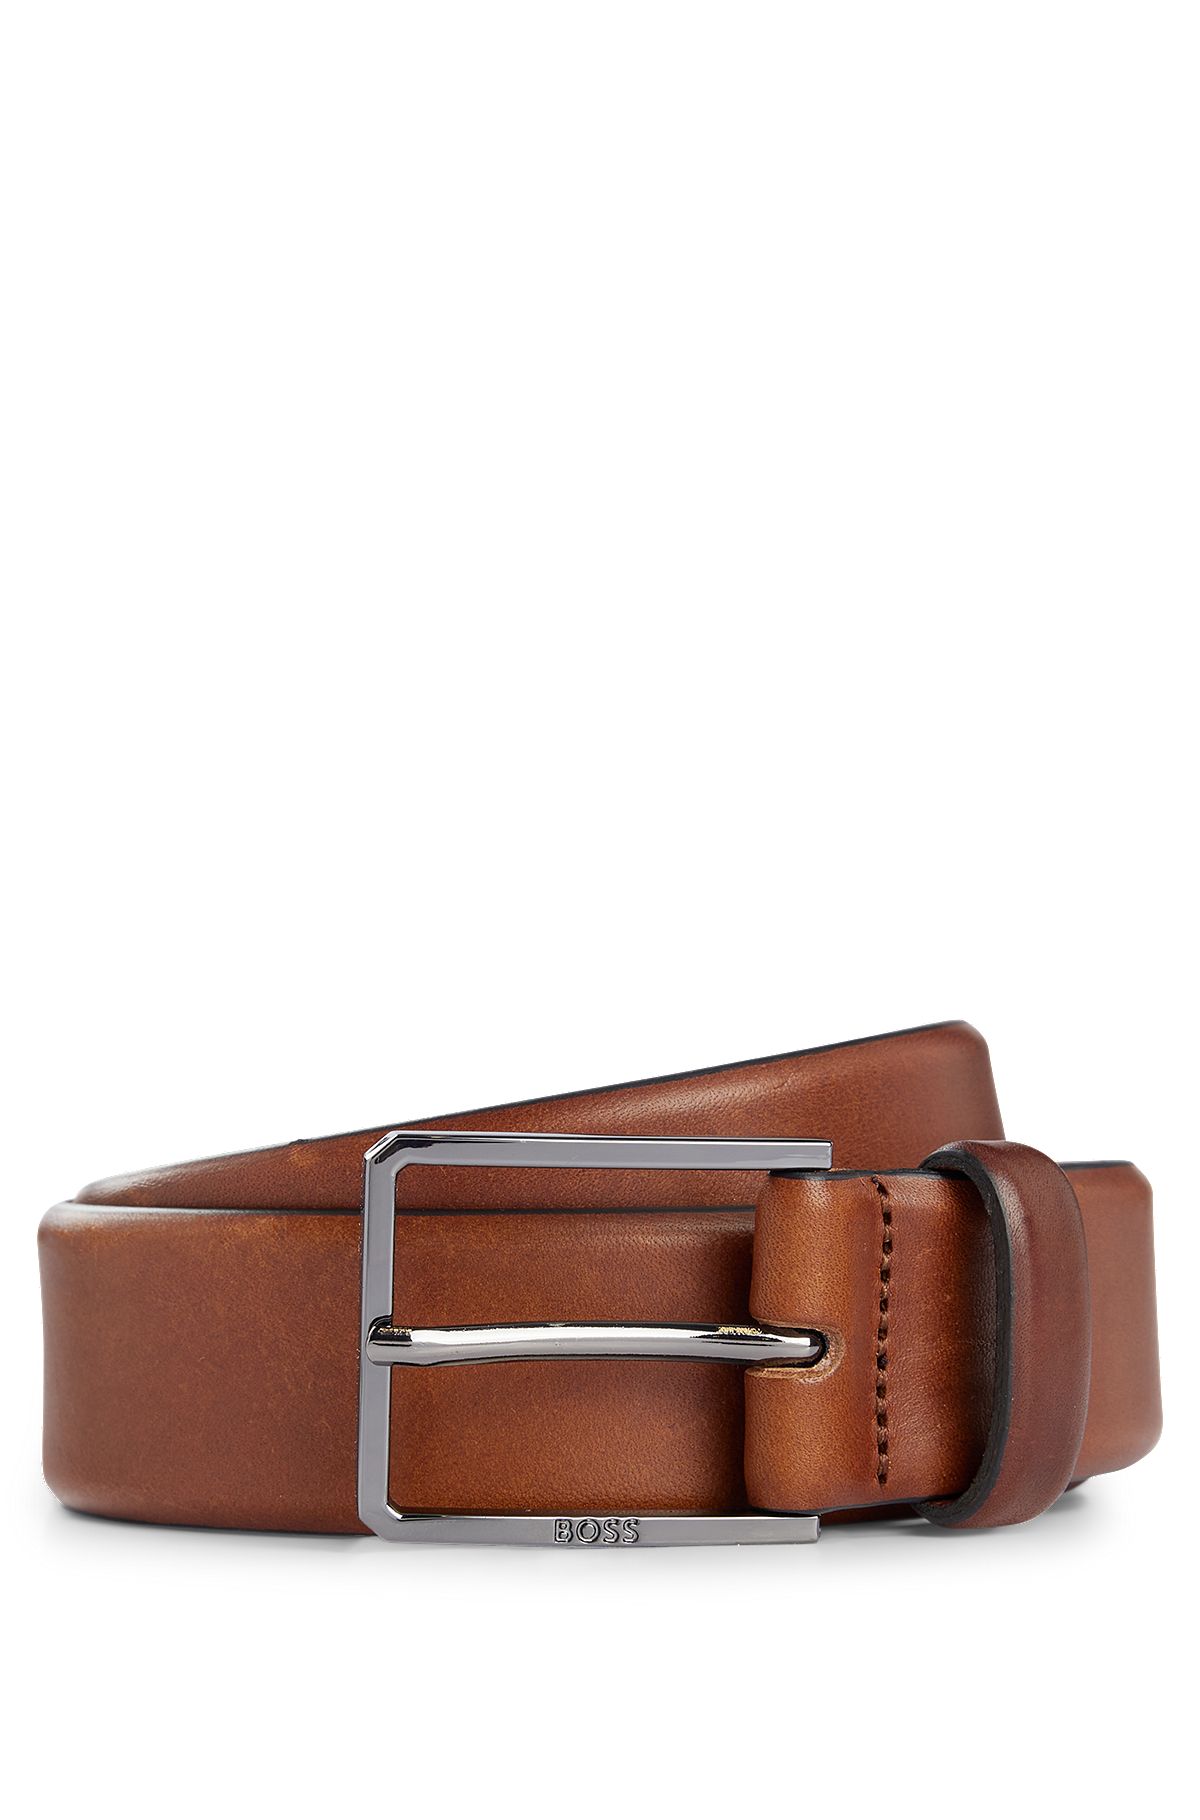 Cinturón de piel italiana con herrajes en bronce industrial pulido, Marrón